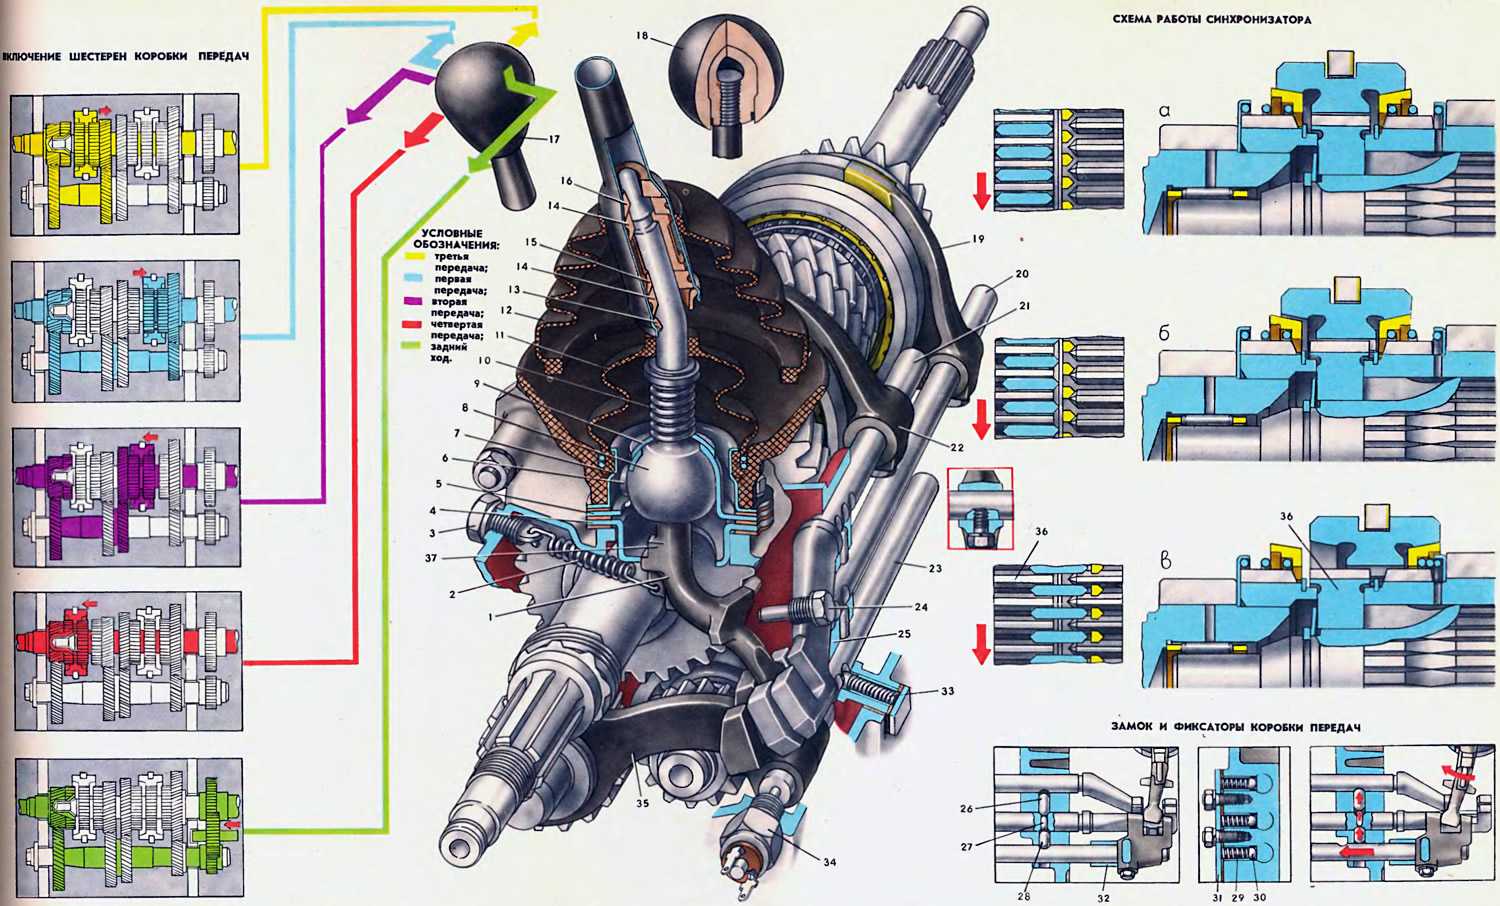 Змз-402 / трансмиссия / коробка передач / переборка пятиступенчатой кпп газель\волга. часть 1 - разборка и дефектовка.